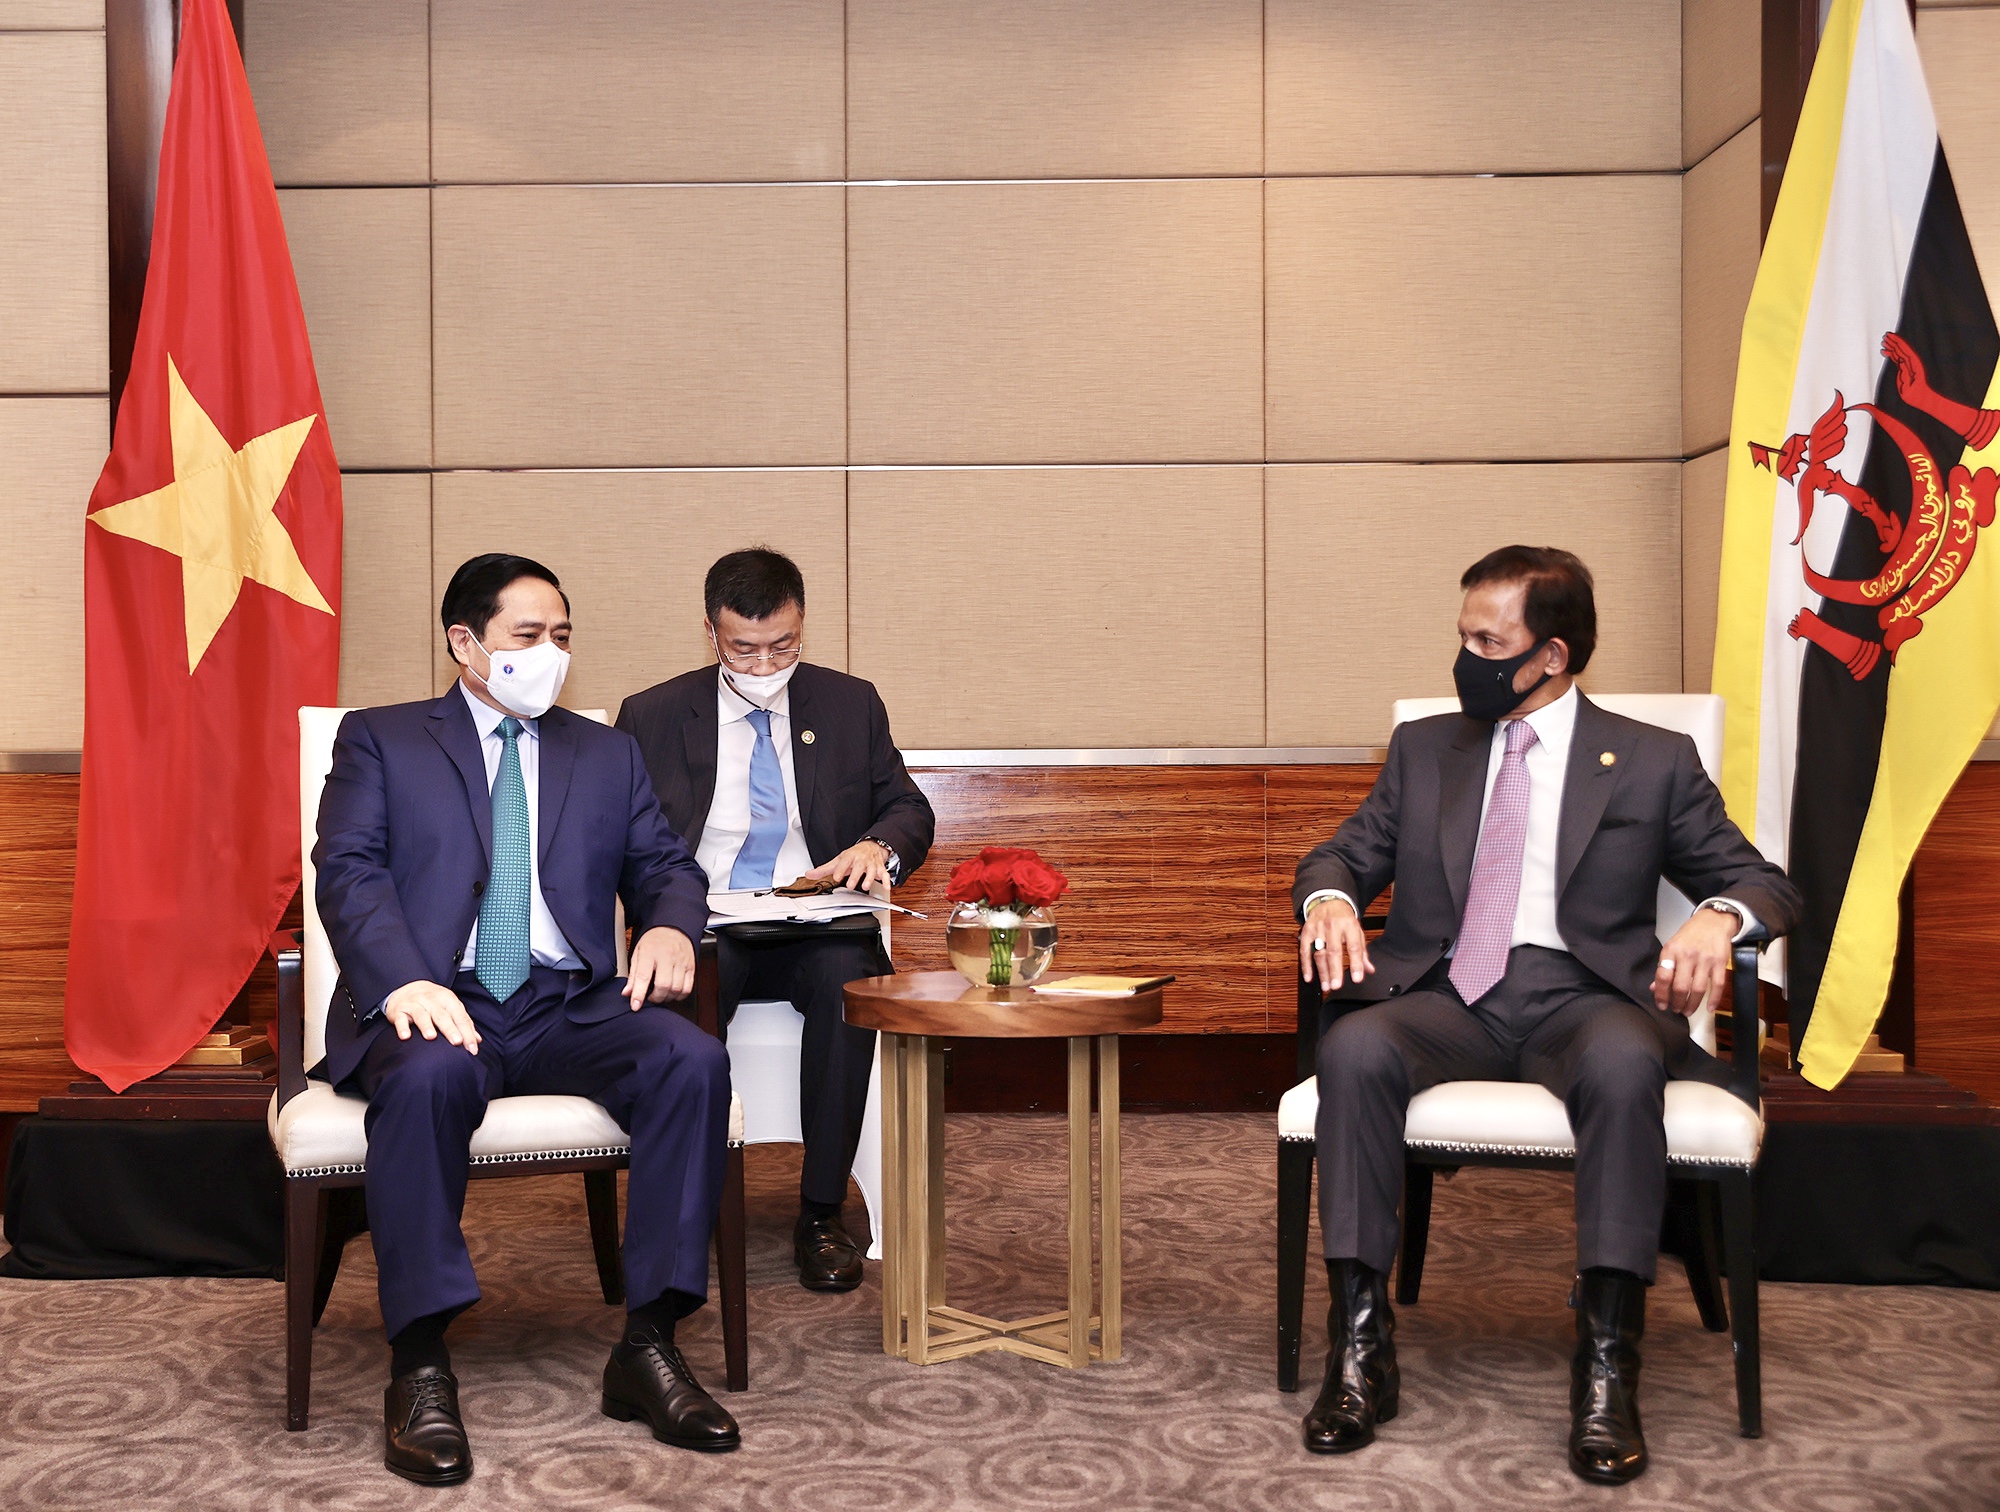 Thủ tướng Phạm Minh Chính nhấn mạnh Việt Nam coi trọng phát triển quan hệ với Brunei, đồng thời khẳng định Việt Nam ủng hộ vai trò Chủ tịch ASEAN 2021 của Brunei Darussalam. Ảnh: VGP/Nhật Bắc